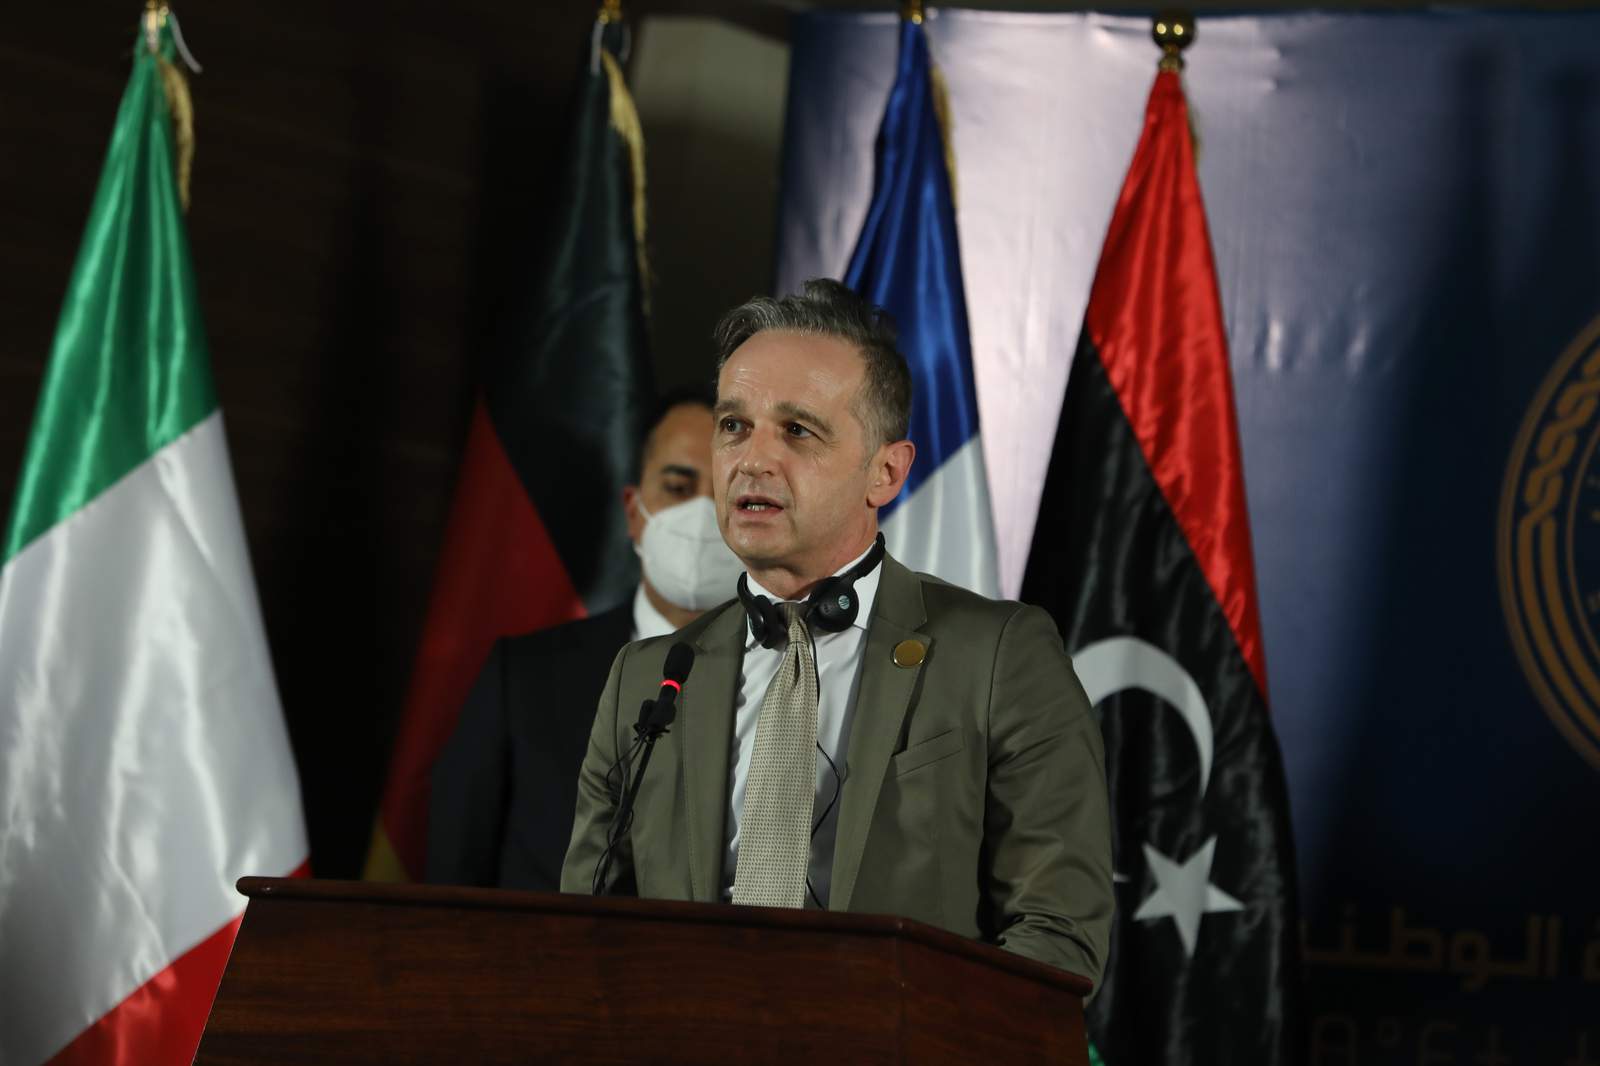 EU top diplomats in Libya to support interim authorities